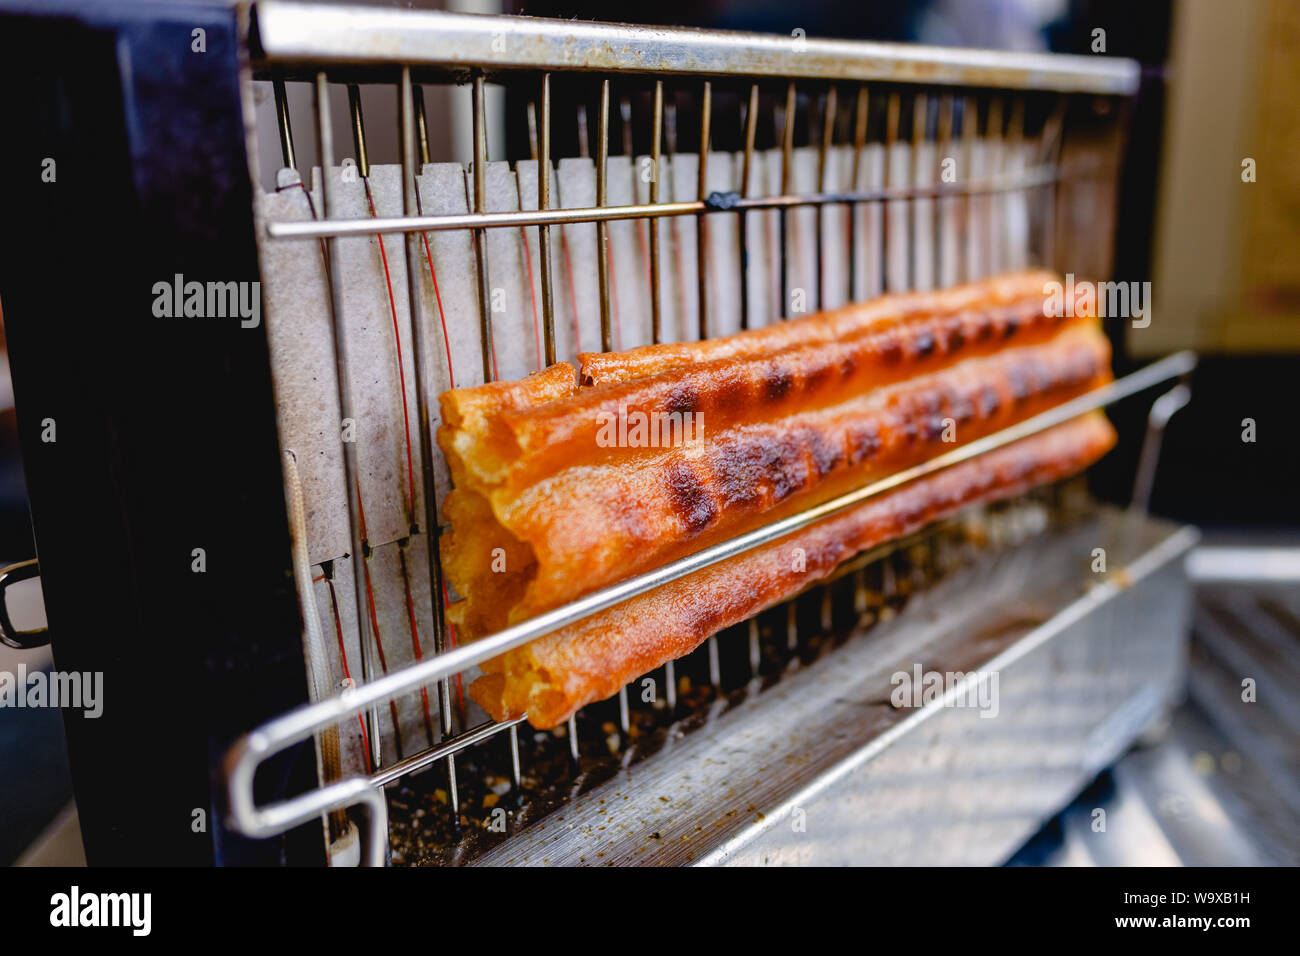 Ein Toaster frie Ein vorgekocht Spanisch churro Stockfotografie - Alamy